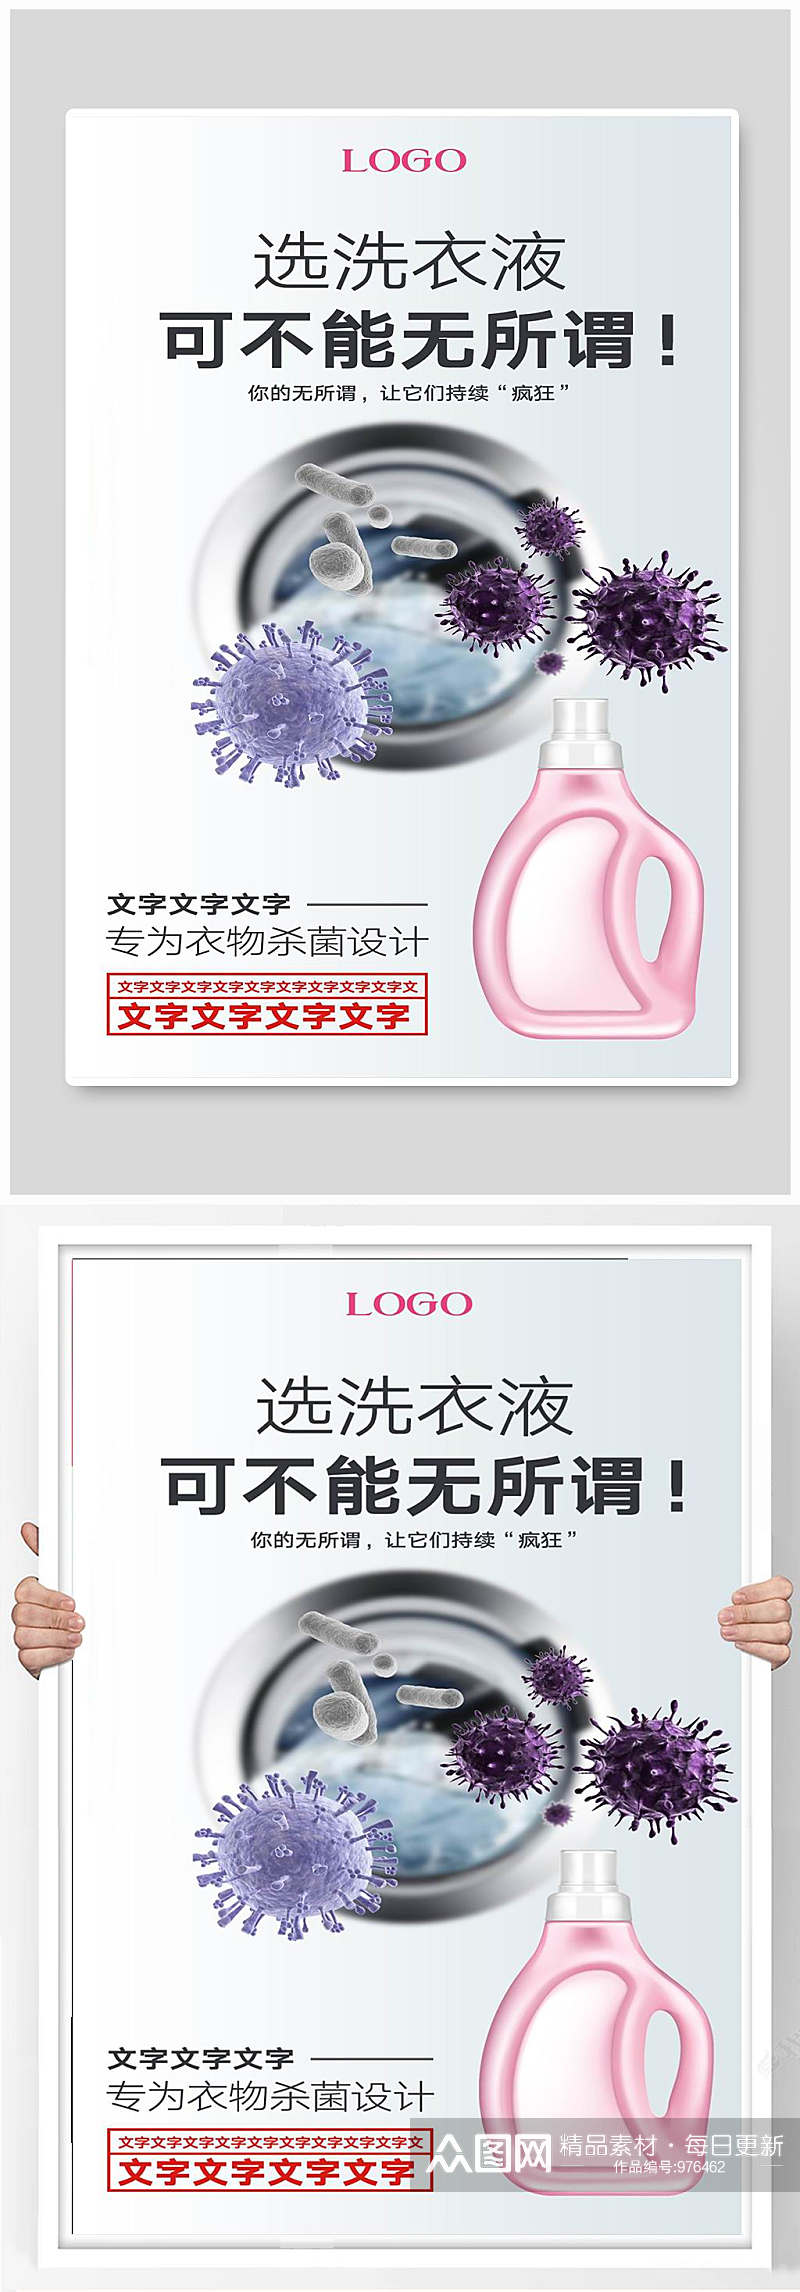 洗衣液宣传海报设计素材